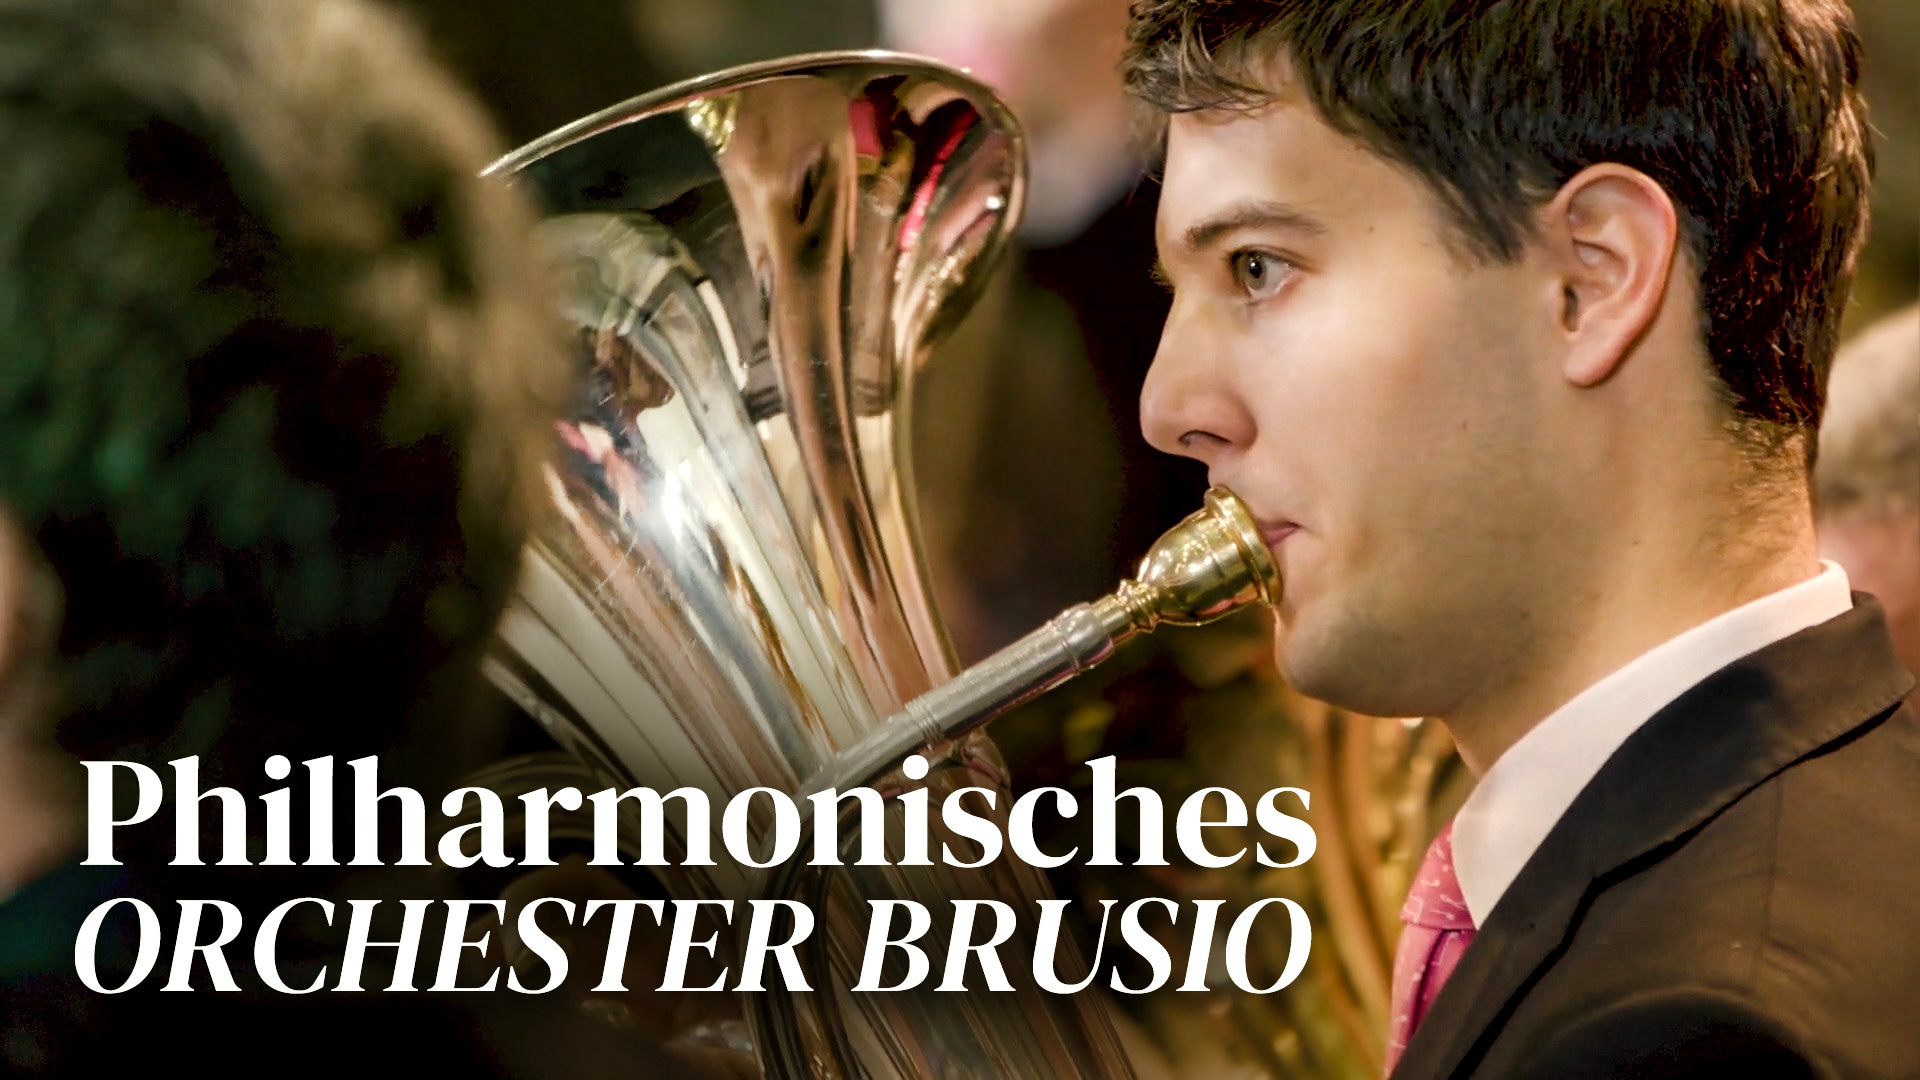 Philharmonisches Orchester Brusio